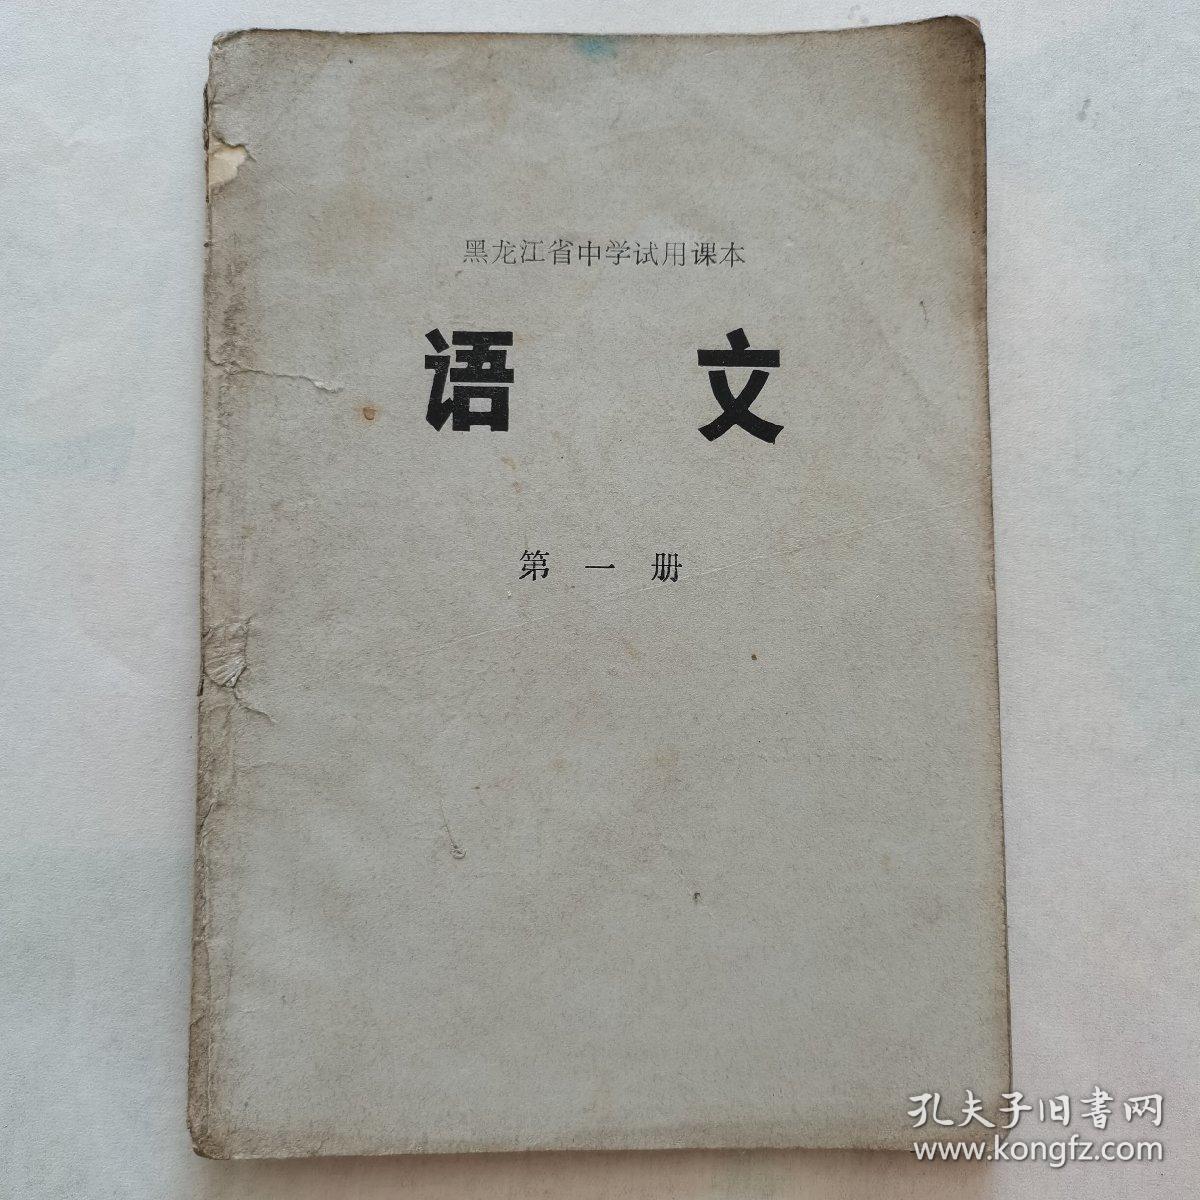 黑龙江省中学试用课本《语文》第一册77年出版